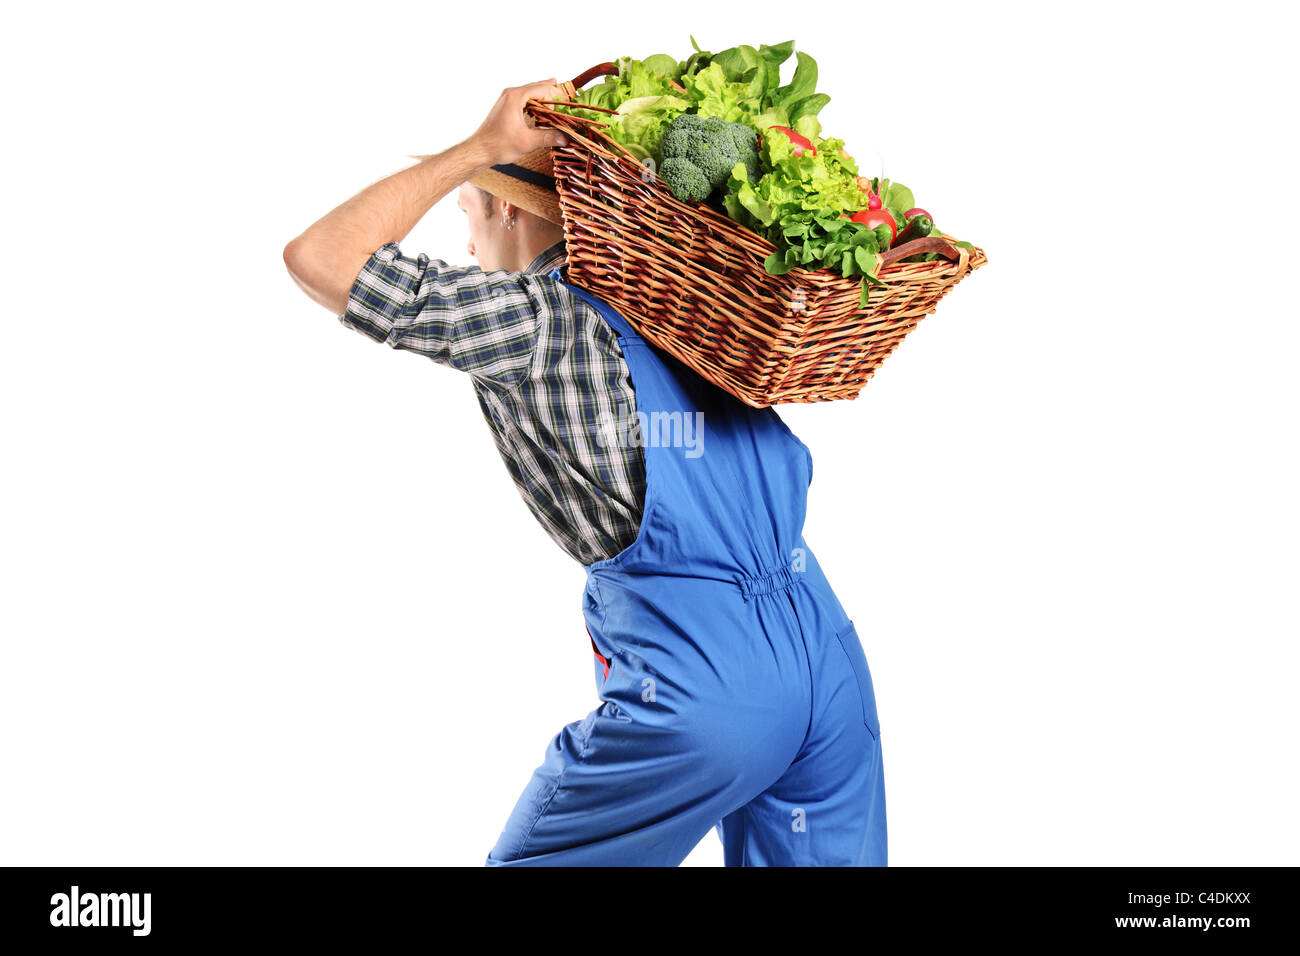 Ein Bauer, einen Korb mit Gemüse auf dem Rücken tragen Stockfoto